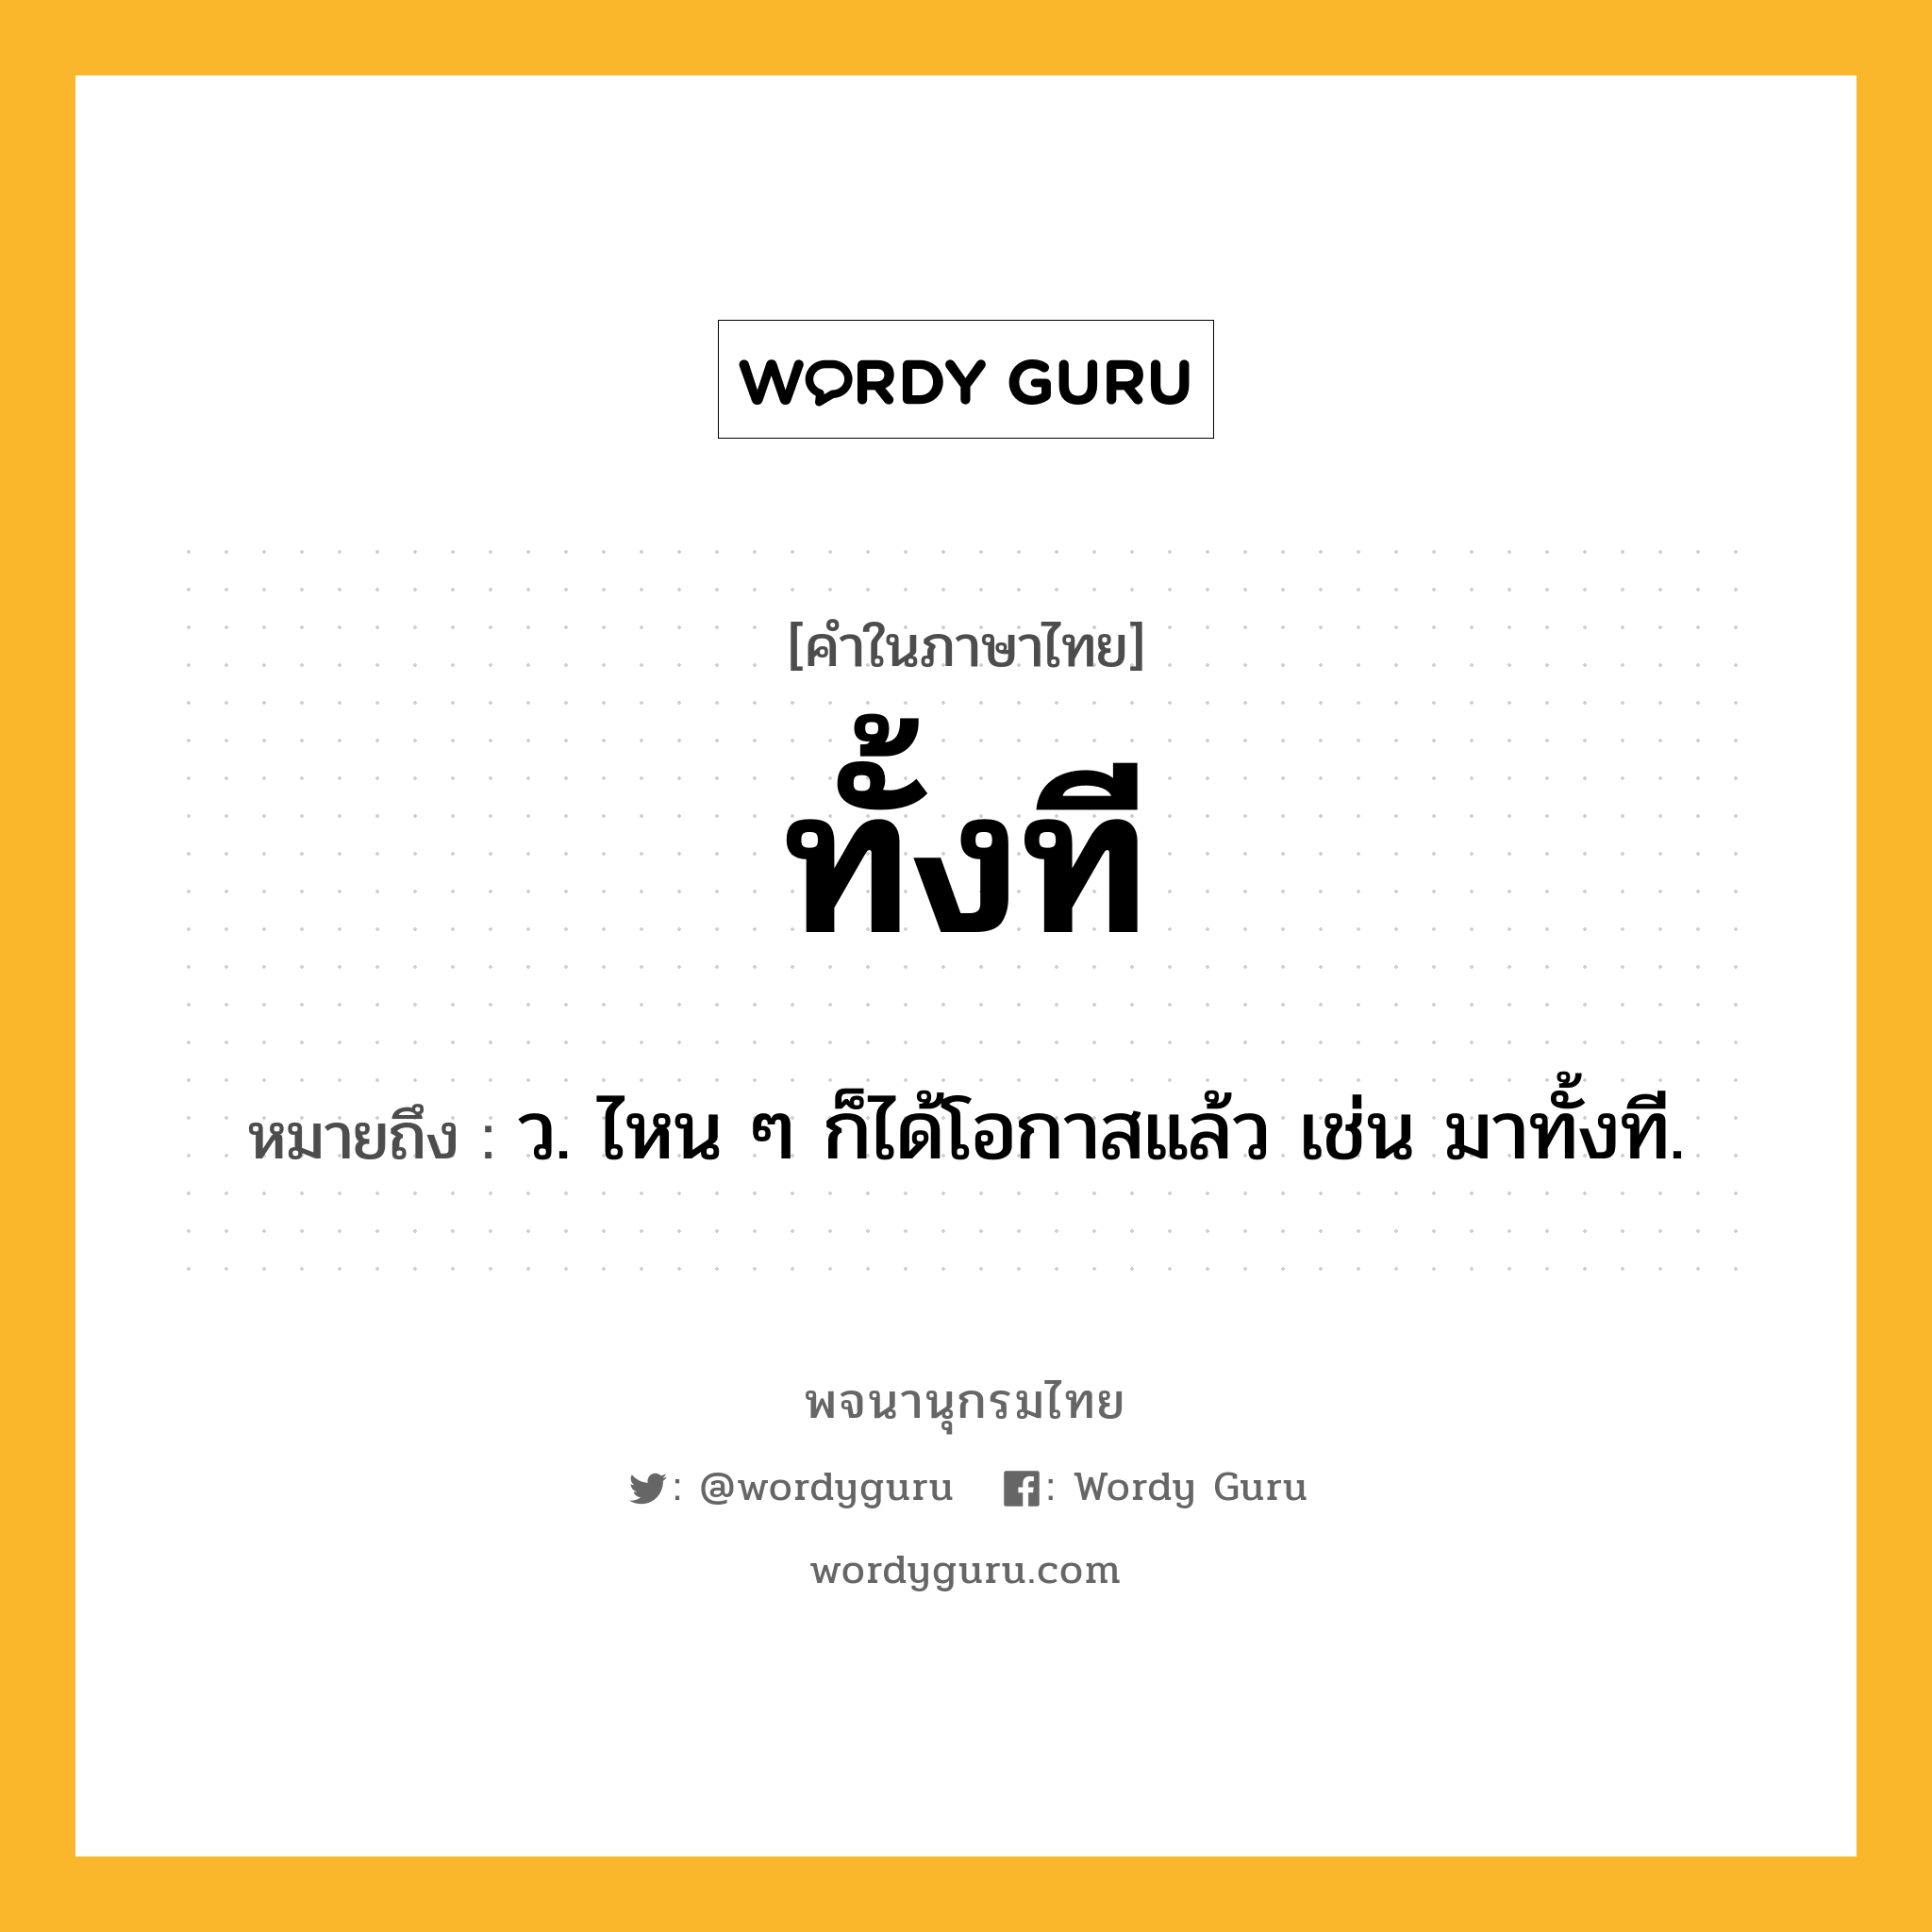 ทั้งที หมายถึงอะไร?, คำในภาษาไทย ทั้งที หมายถึง ว. ไหน ๆ ก็ได้โอกาสแล้ว เช่น มาทั้งที.